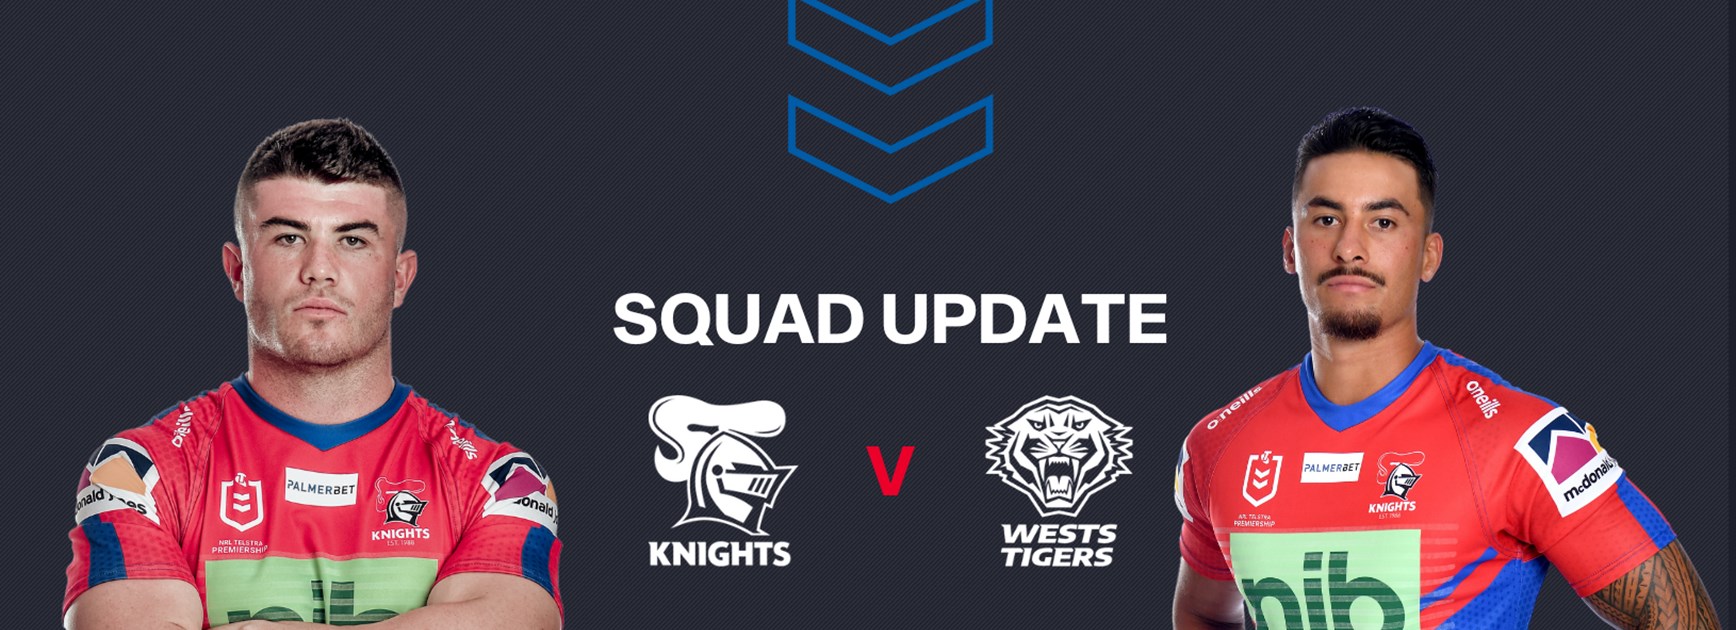 Squad Update: Knights v Tigers